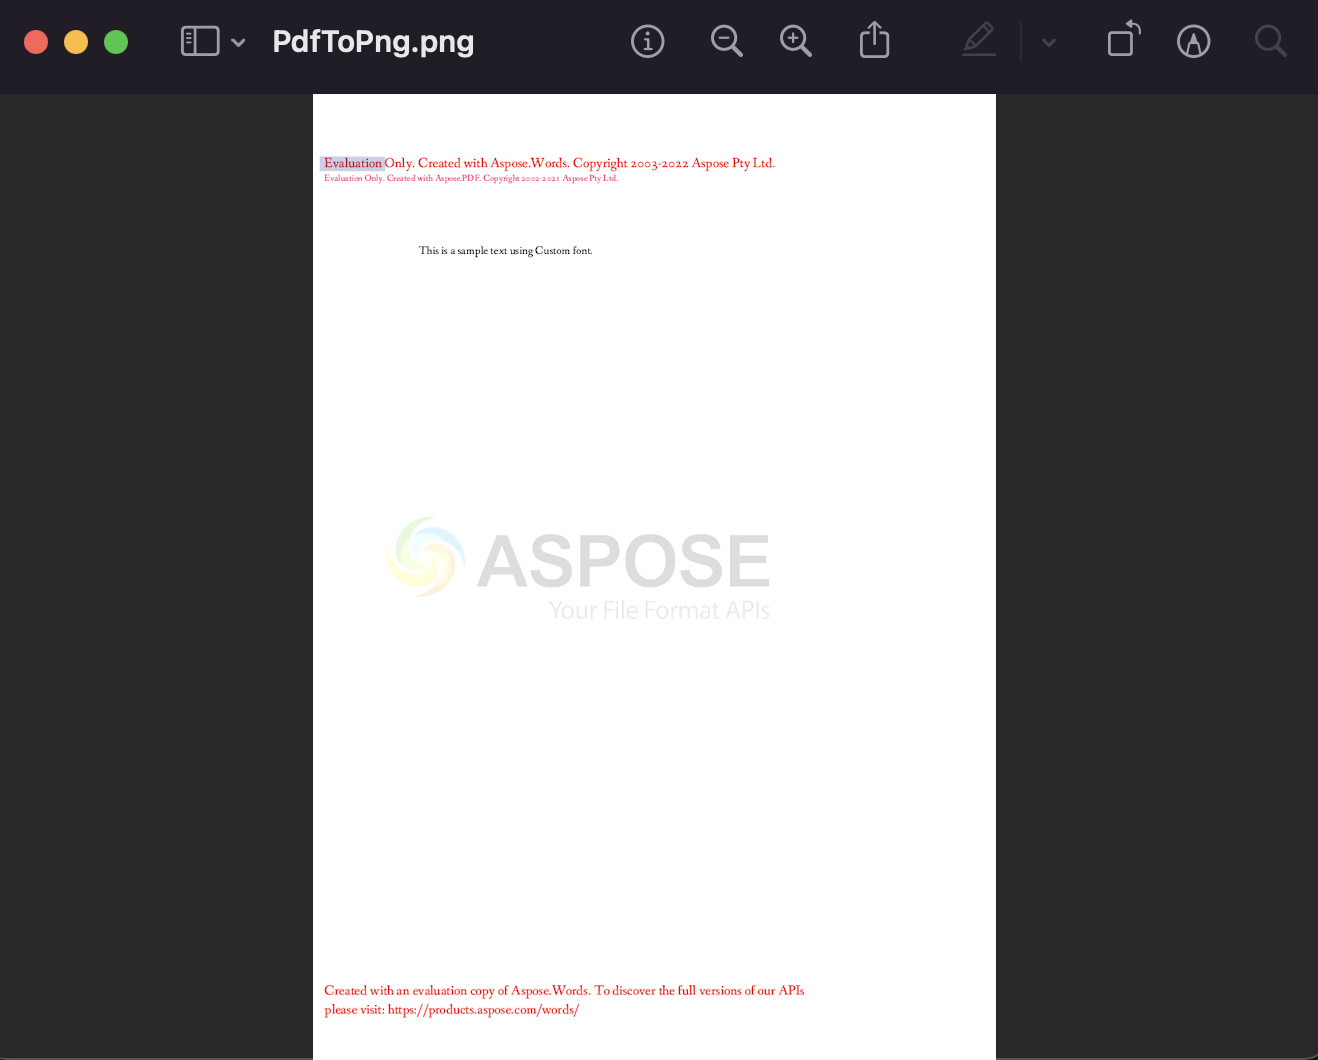 Konverter PDF ke PNG